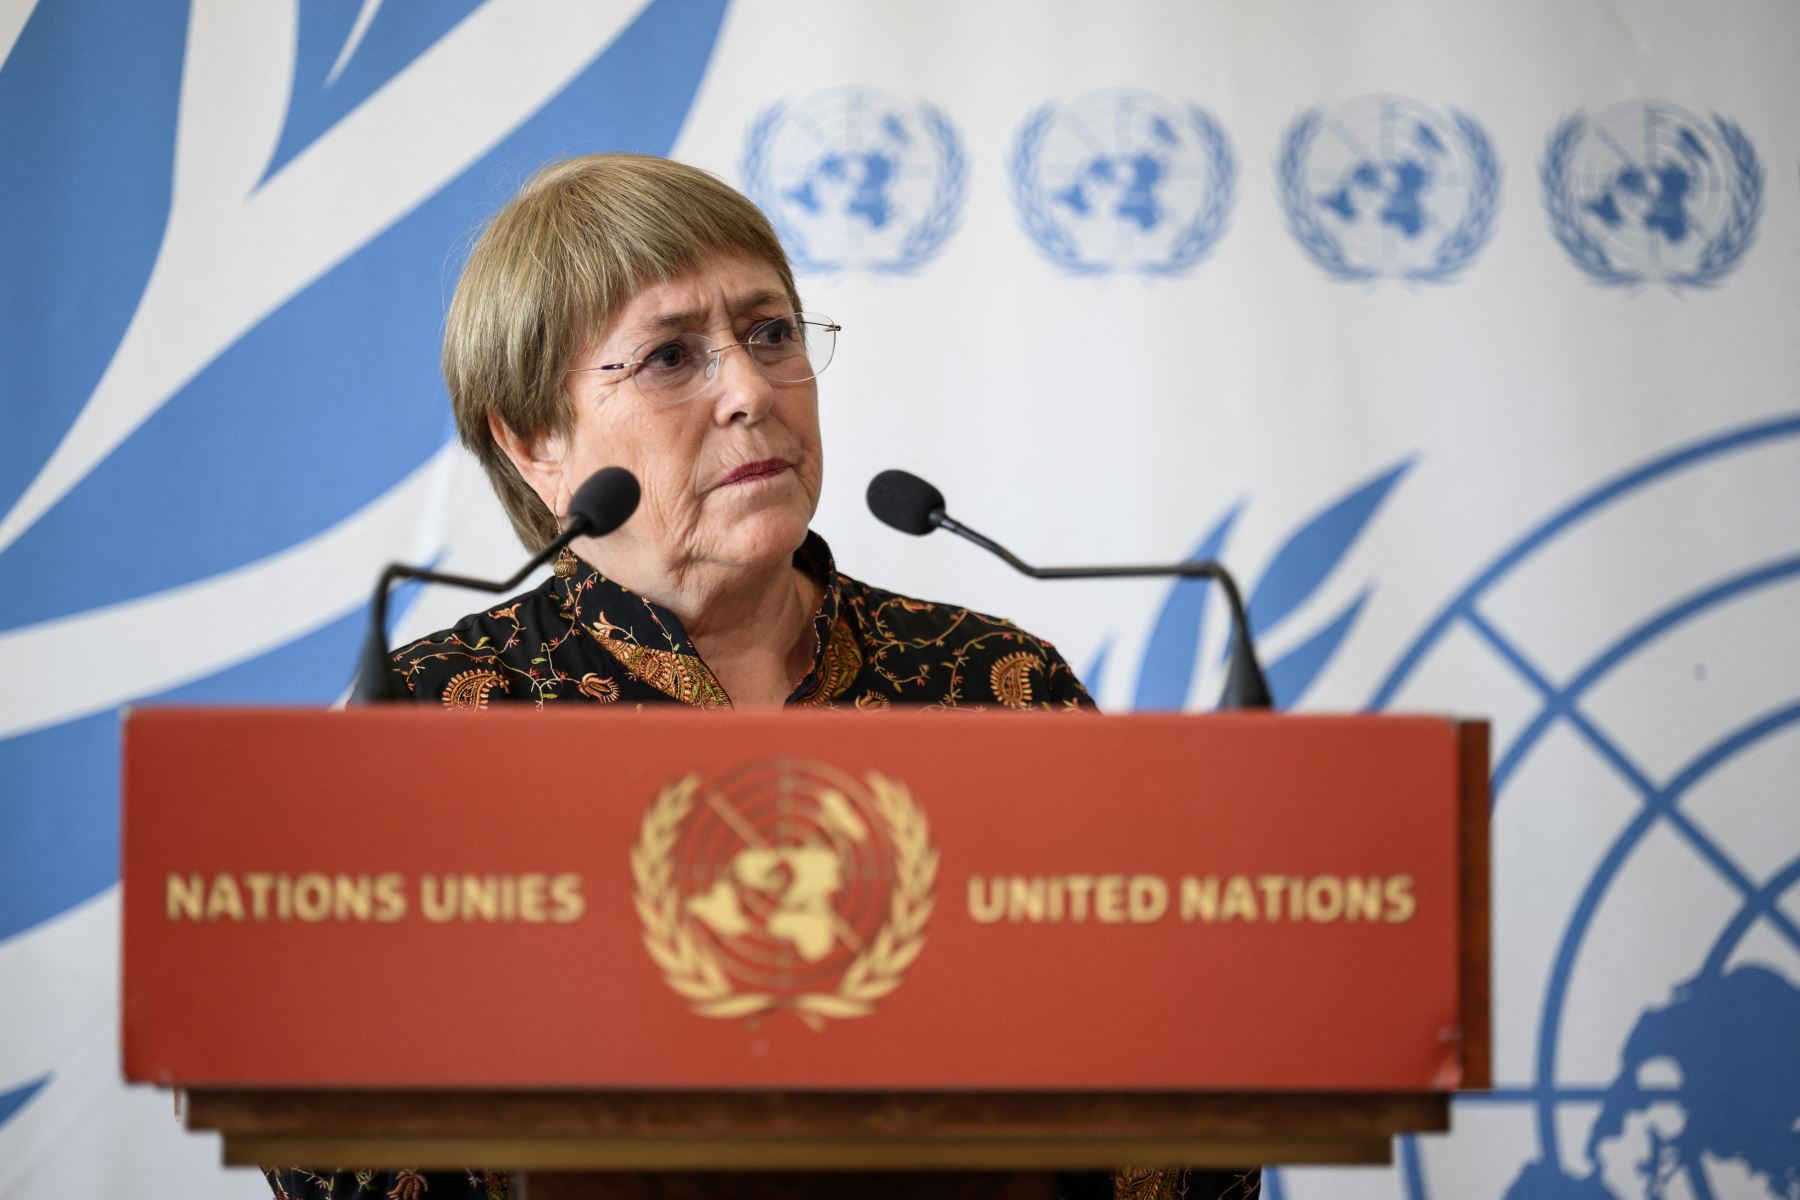 La jefa de derechos de la ONU, Michelle Bachelet, anunció que no buscará un segundo mandato, poniendo fin a meses de especulaciones sobre sus intenciones y en medio de crecientes críticas a su postura laxa sobre los abusos de derechos en China. Foto: AFP